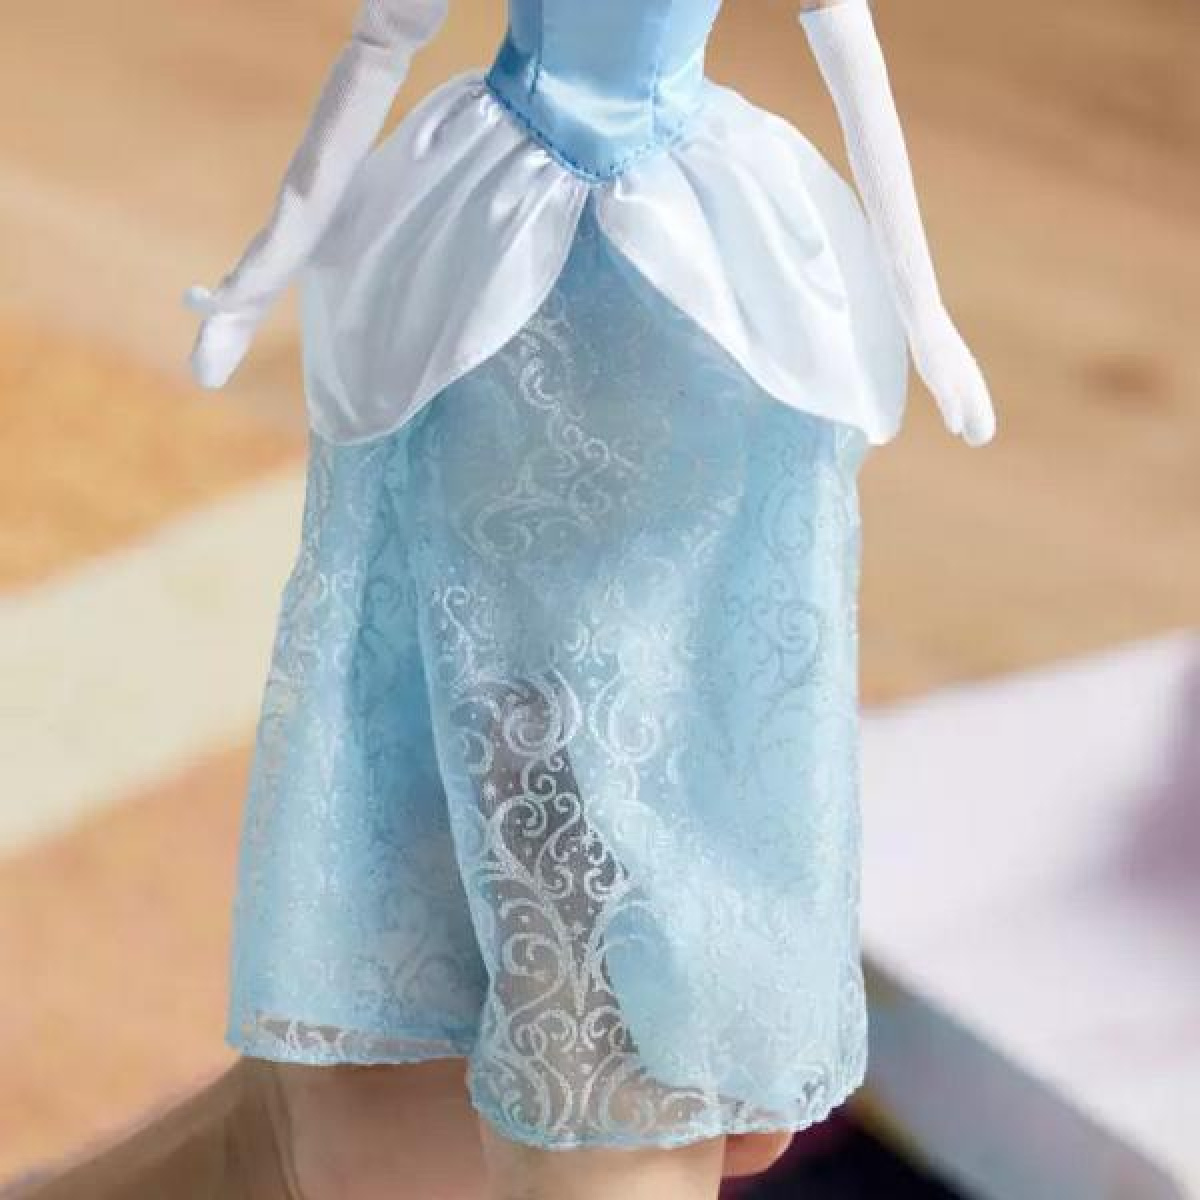 Disney Cinderella Σταχτοπούτα Κλασική Κούκλα 29cm Με αξεσουάρ 3 ετών και Πάνω